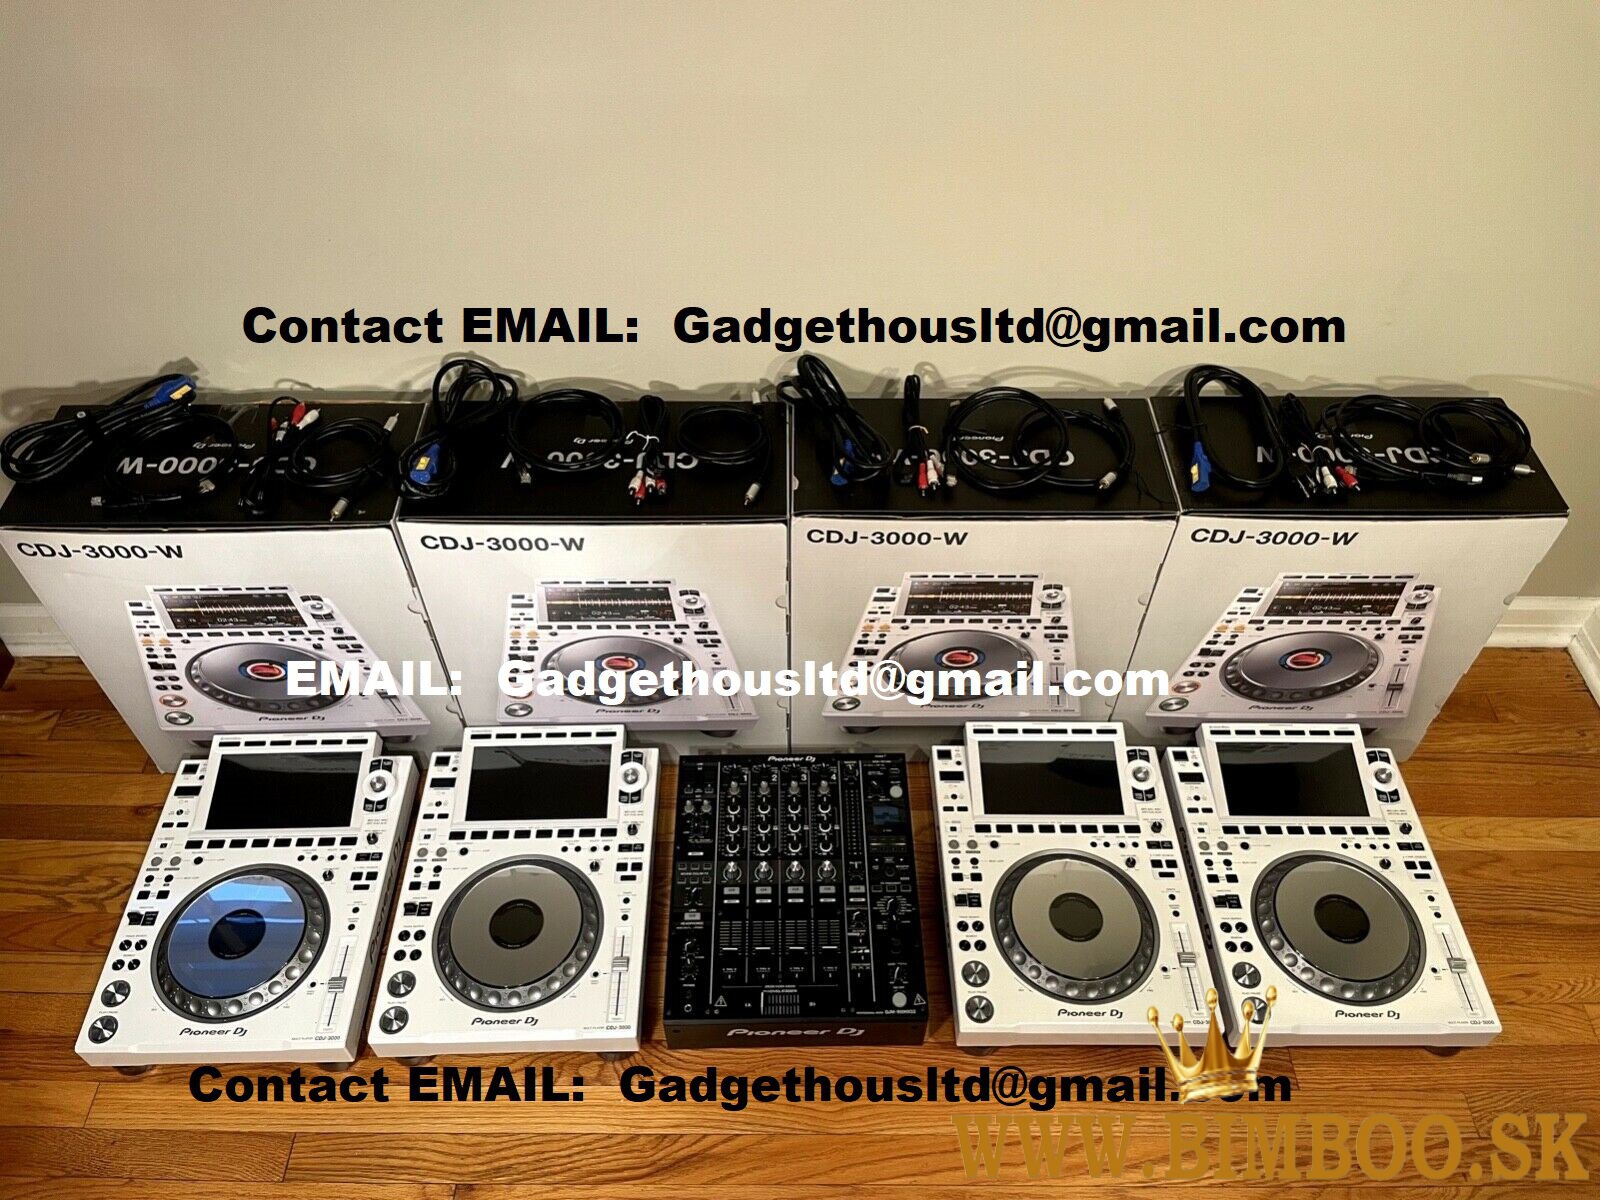 Pioneer CDJ-3000/ Pioneer CDJ 2000NXS2/ Pioneer DJM 900NXS2/ Pioneer DJM-V10/ Pioneer DJM-S11 DJ Mix